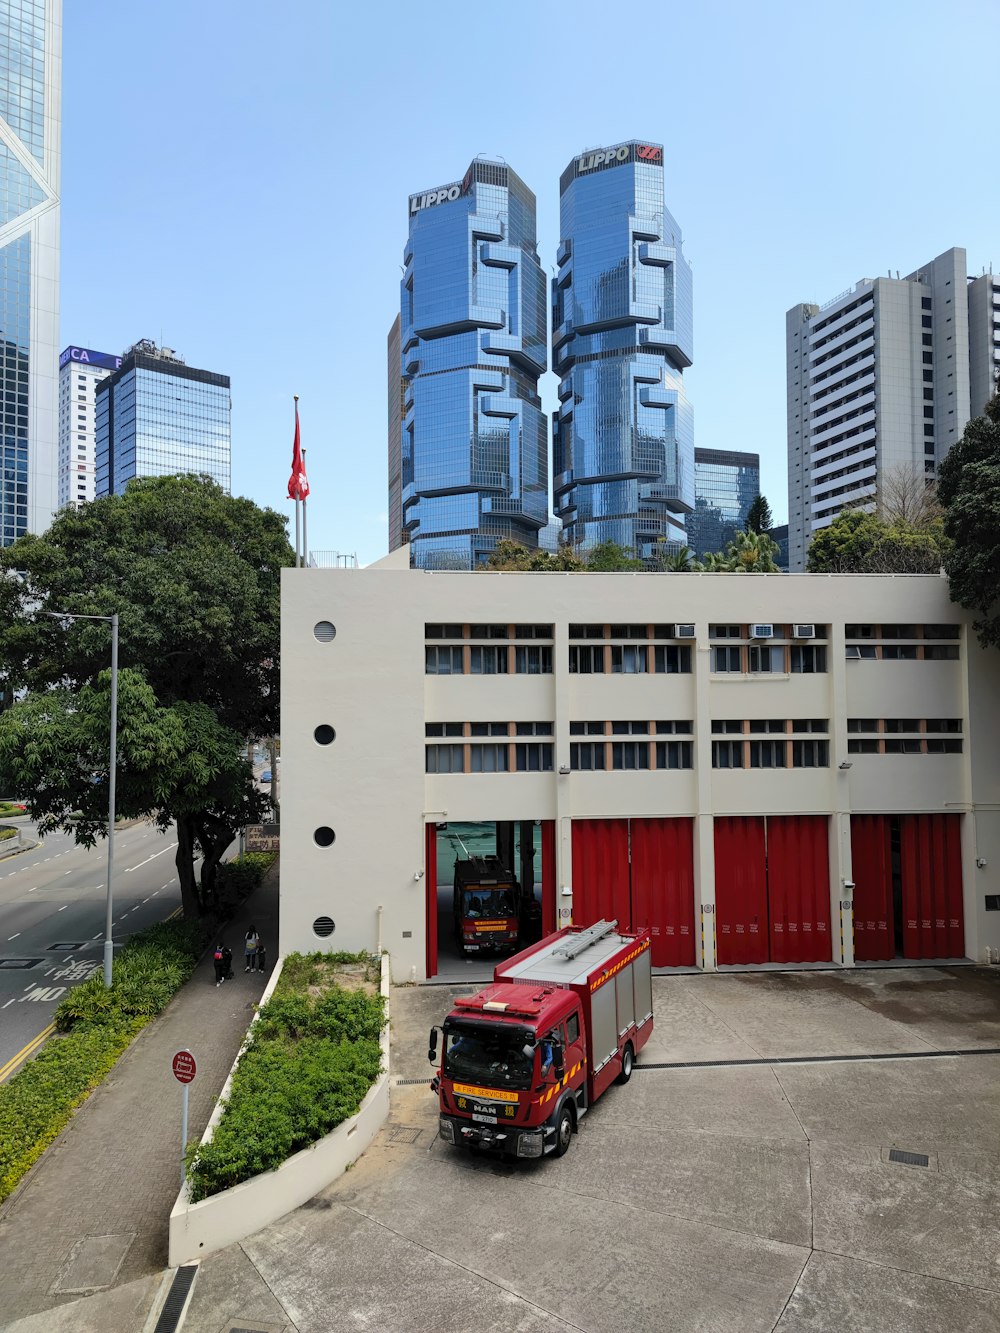 Un camion rosso e bianco parcheggiato davanti a un edificio